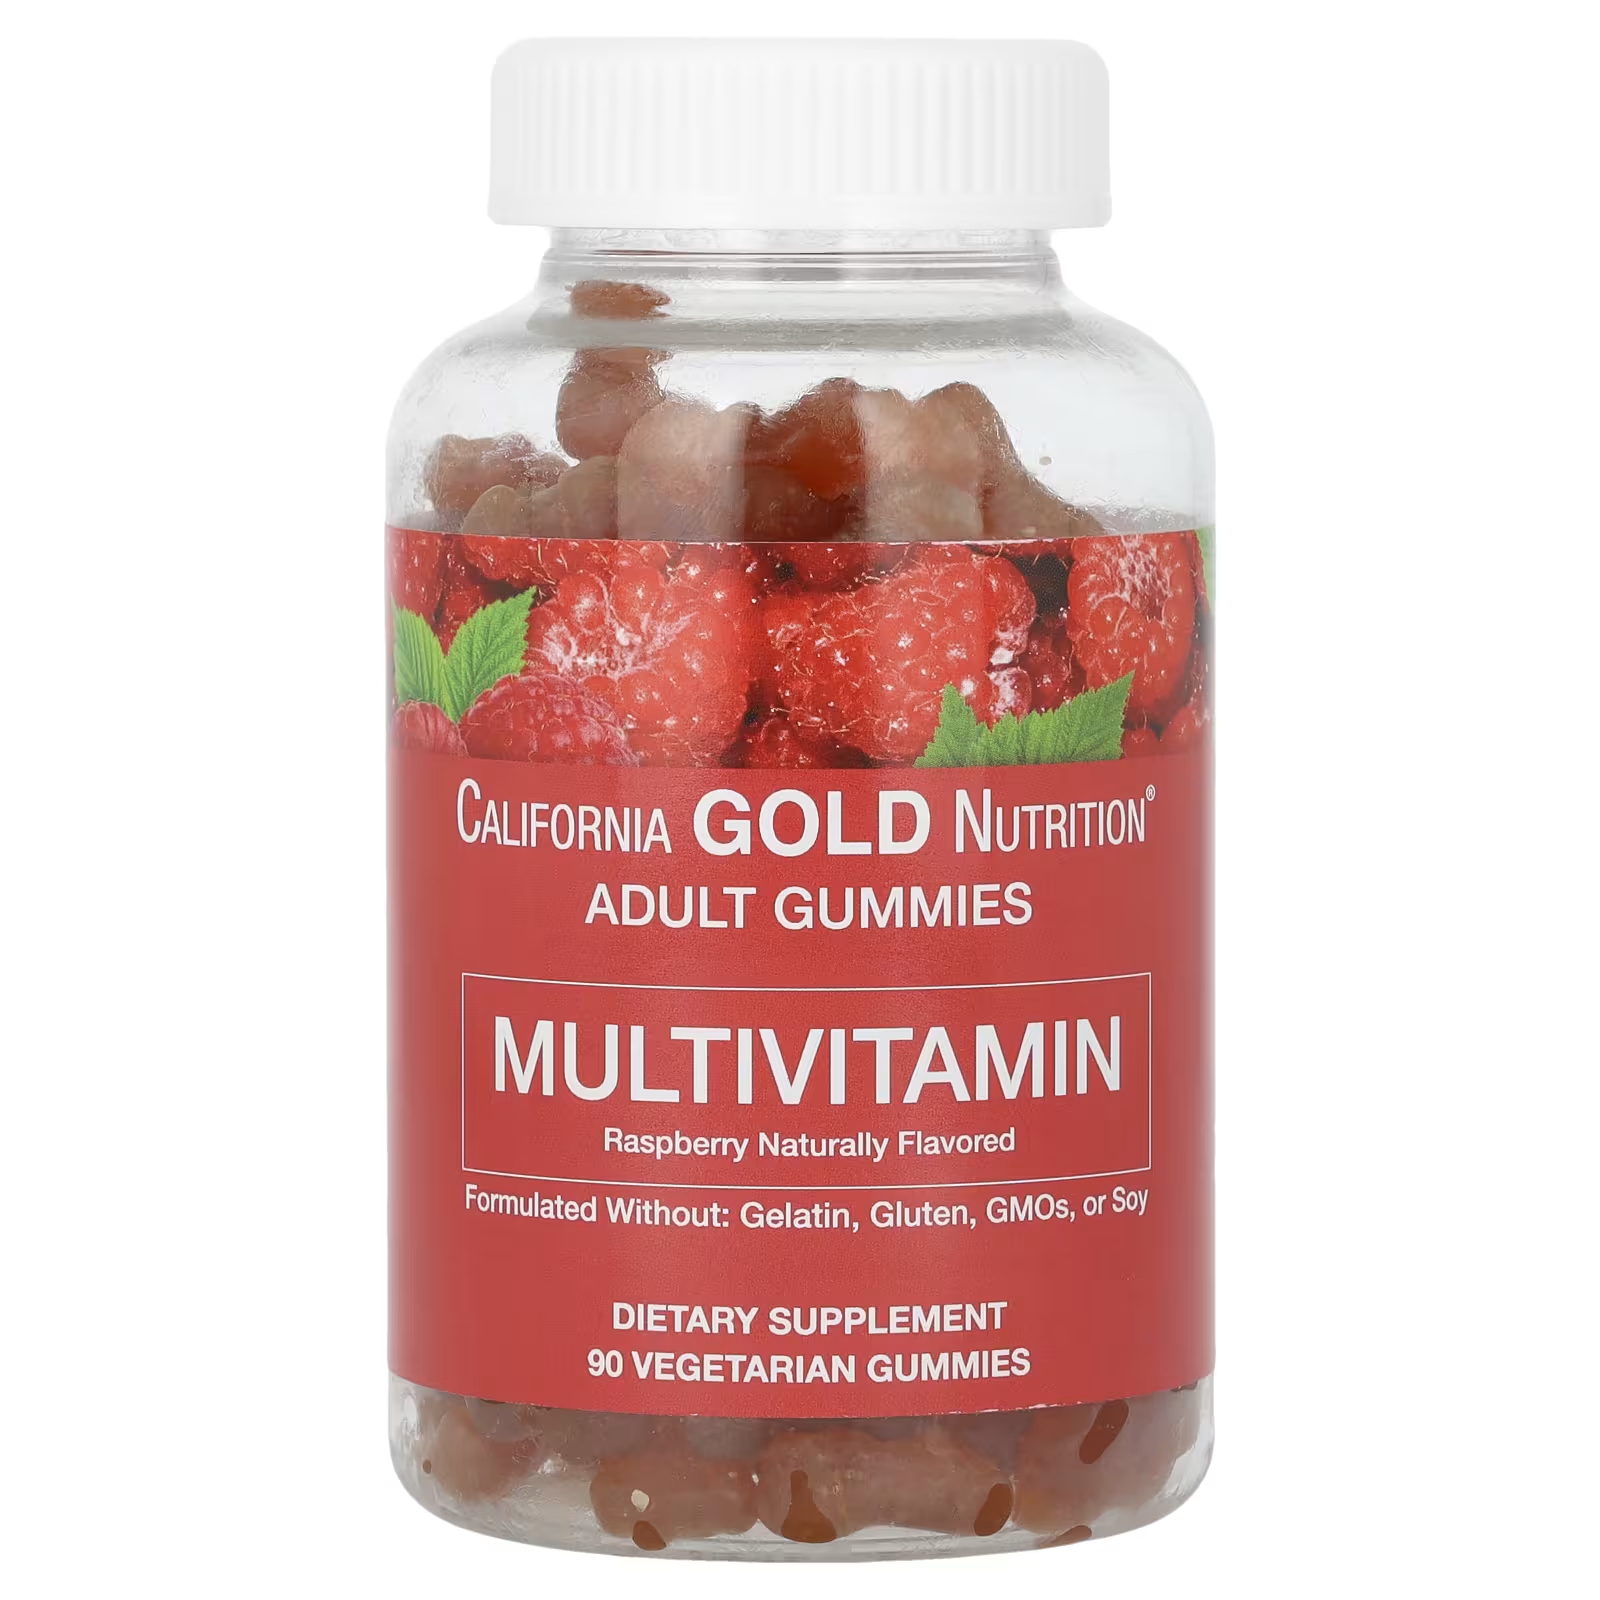 Мультивитаминные жевательные конфеты для взрослых с натуральным вкусом малины, 90 вегетарианских жевательных конфет California Gold Nutrition nature s bounty жевательные мультивитамины для женщин со вкусом малины 25 мг 90 жевательных таблеток